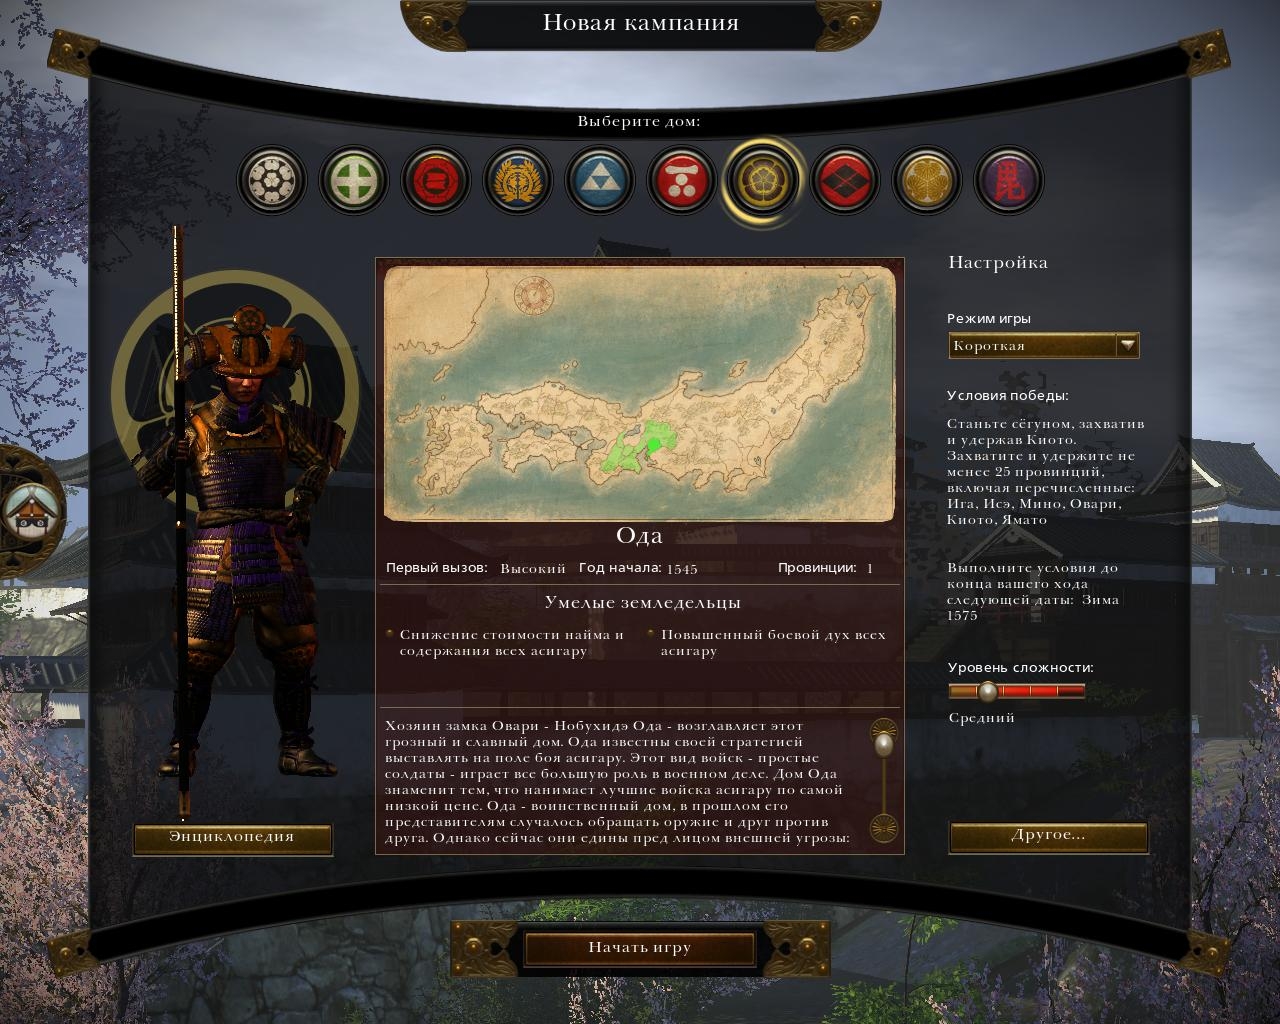 Скриншот из игры Total War: Shogun 2 под номером 31